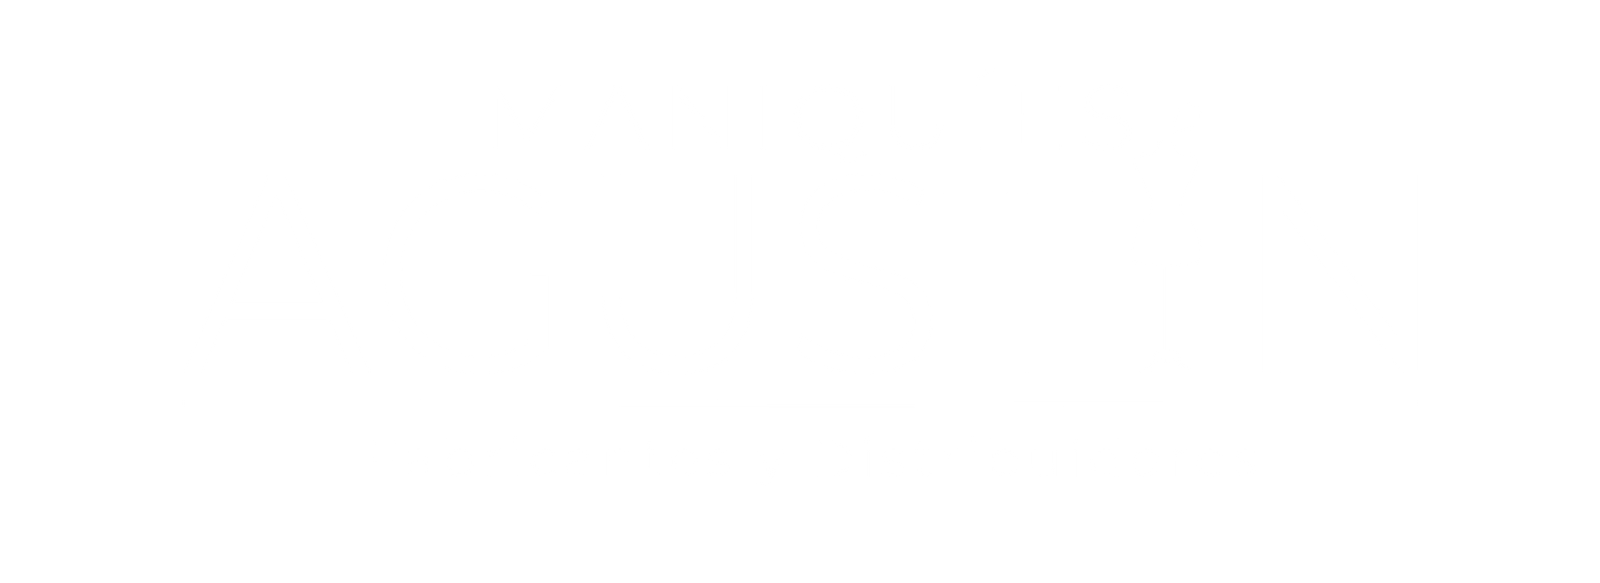 Maniquí hombre recto sin base talle 40 plástico - Maniquies Agustin